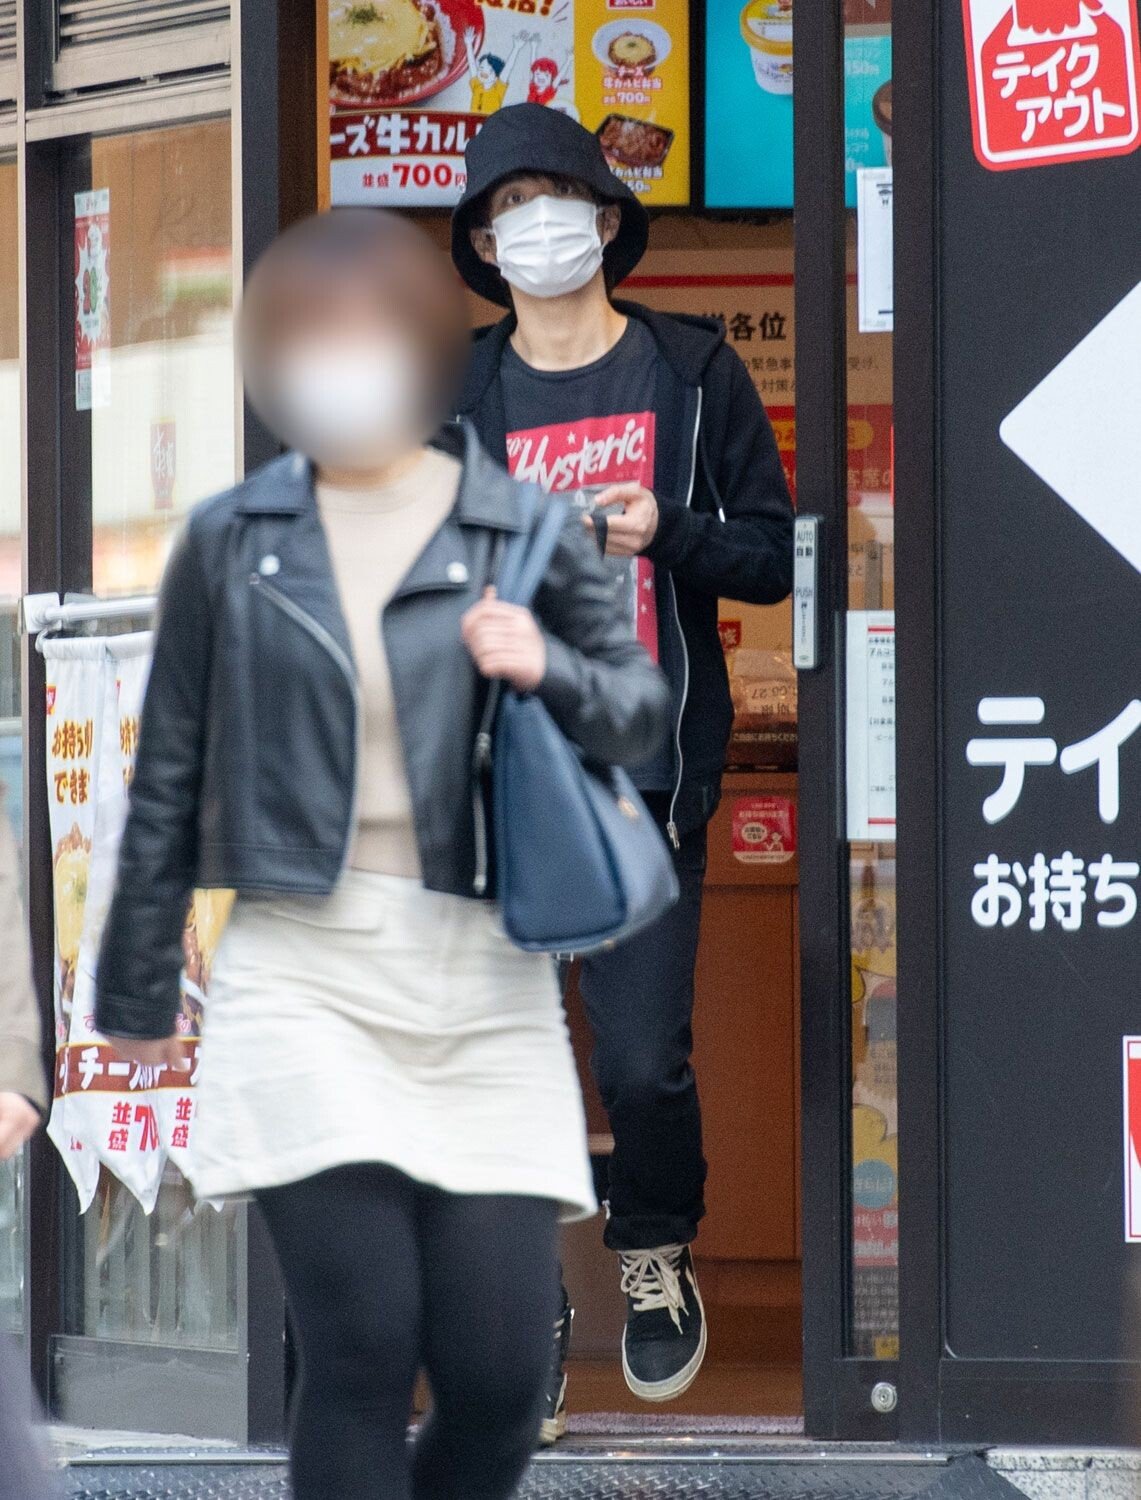 일본에서 화제인 스캔들 - 꾸르